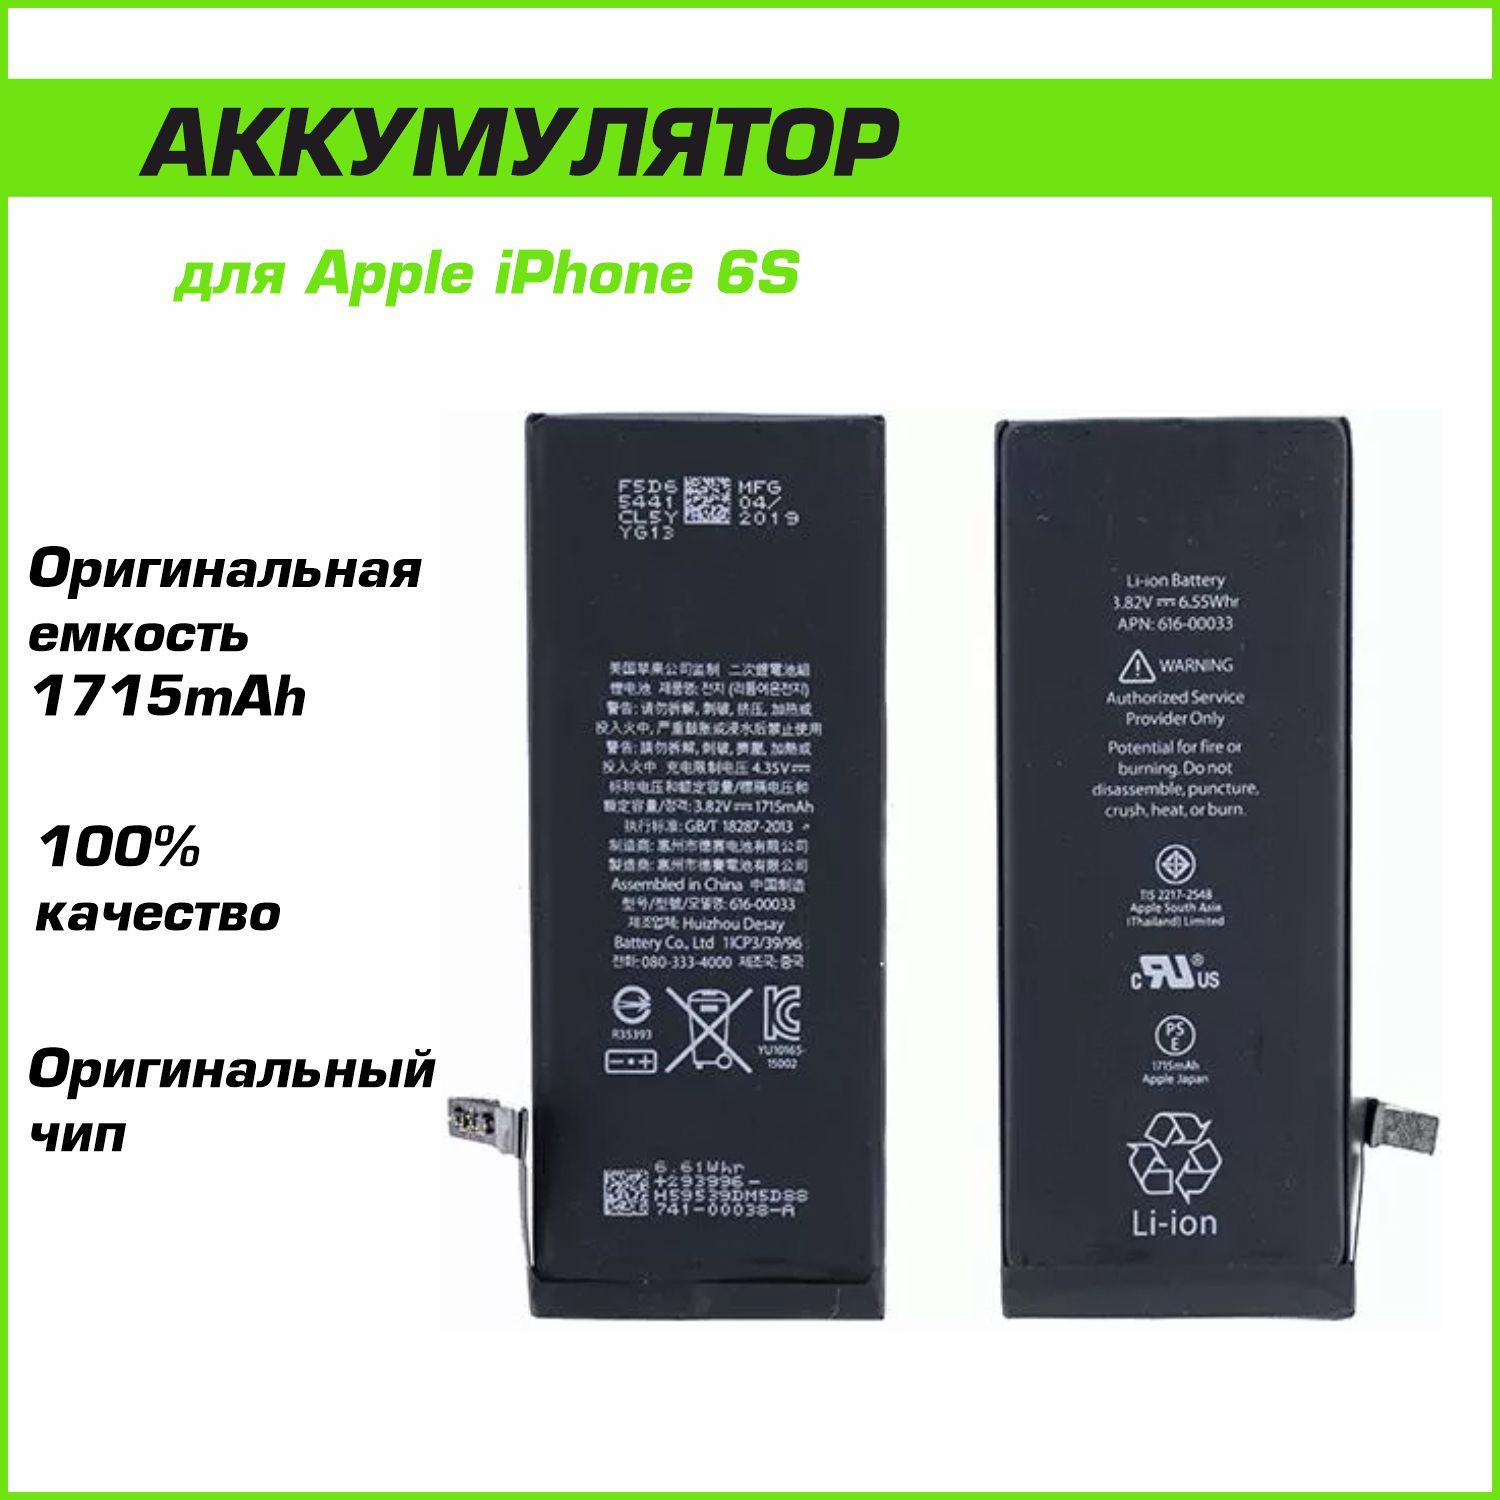 Аккумулятор Apple iPhone 6S 1715mAh (оригинальный чип)